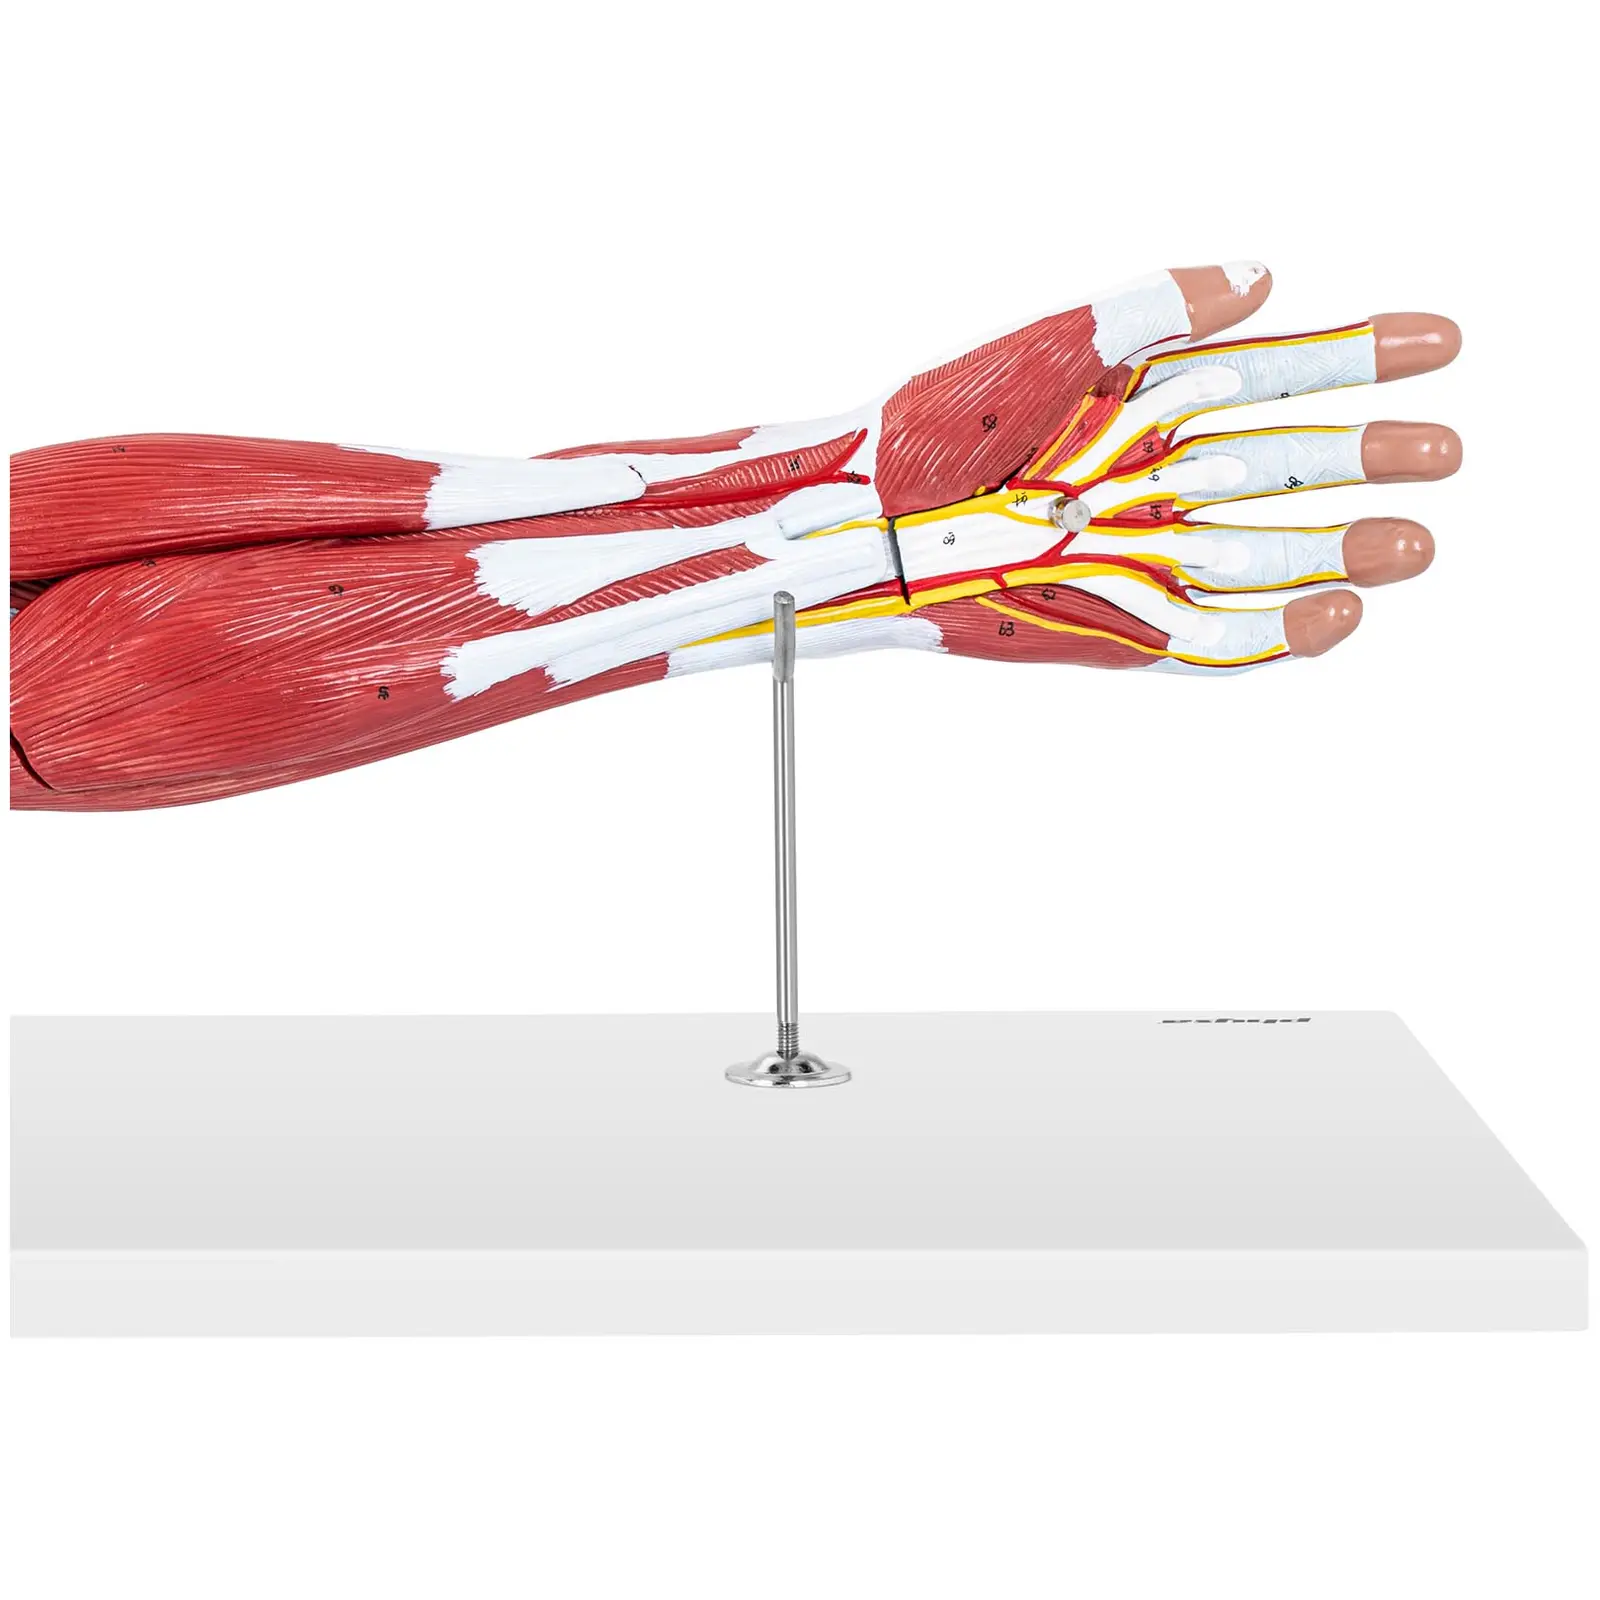 Model roke - sedem delov - v naravni velikosti